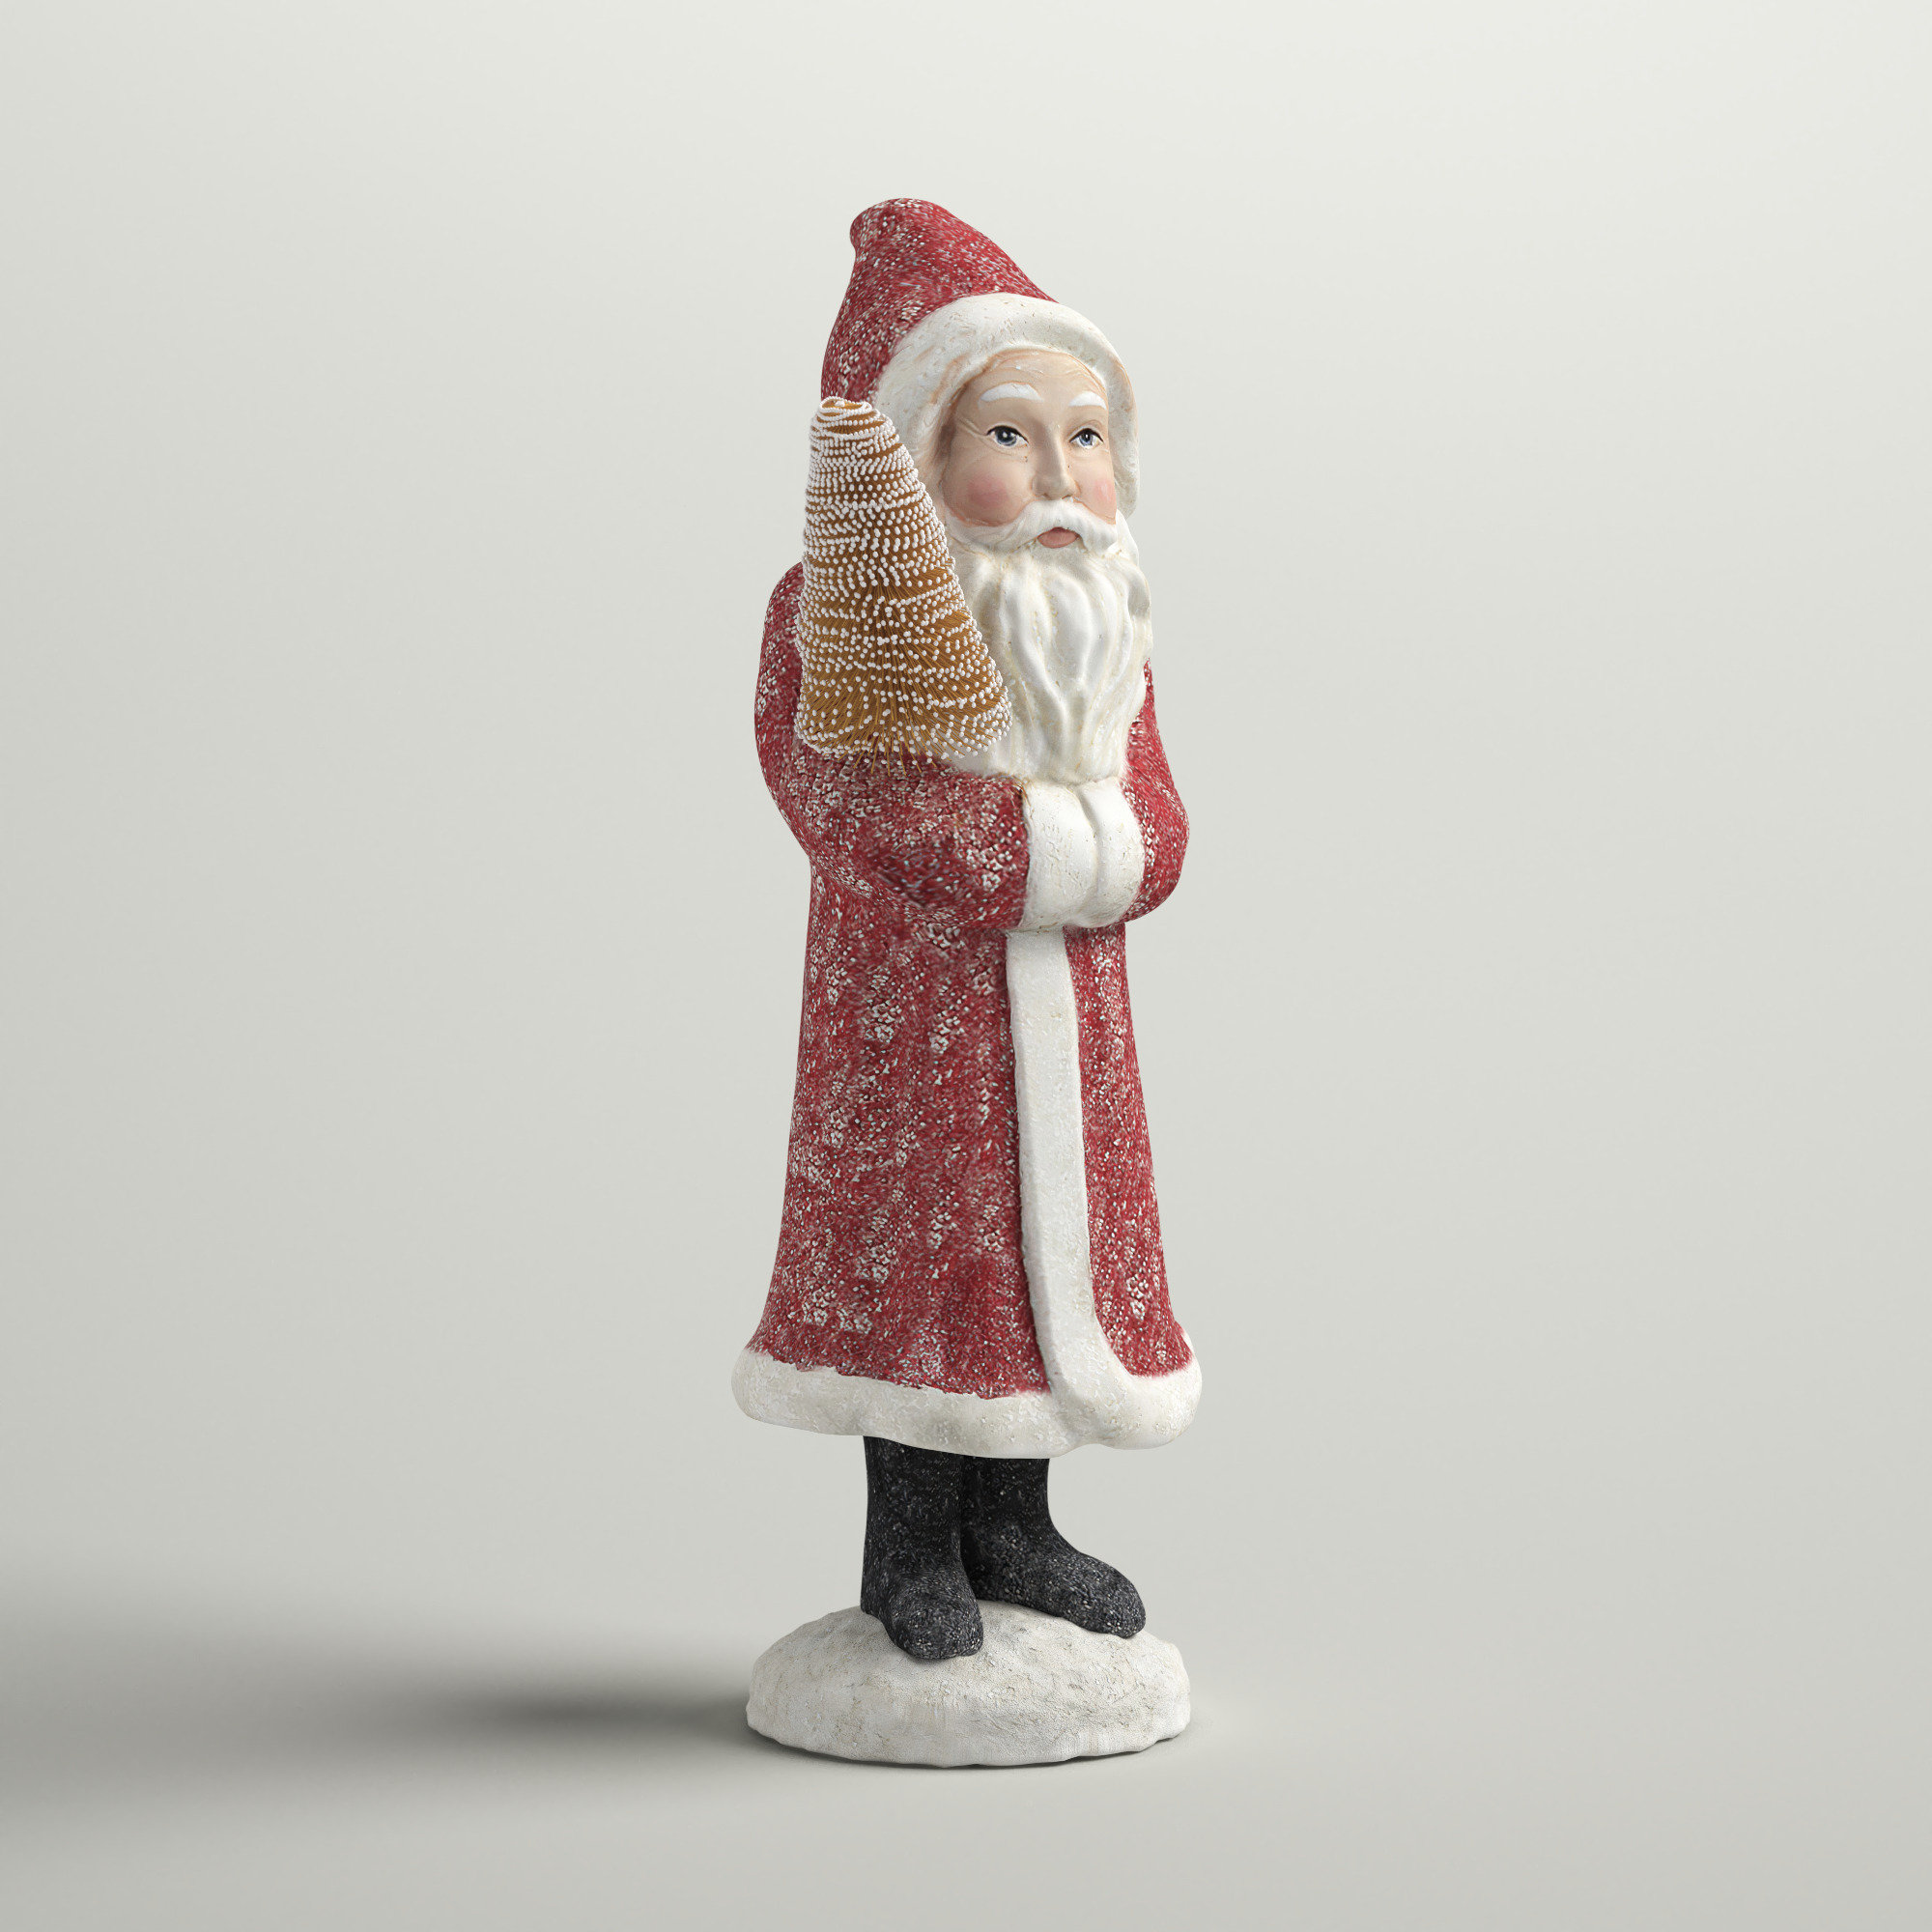 Vintage Wood Santa Figurine Felt Red Suit Christmas Decor 5